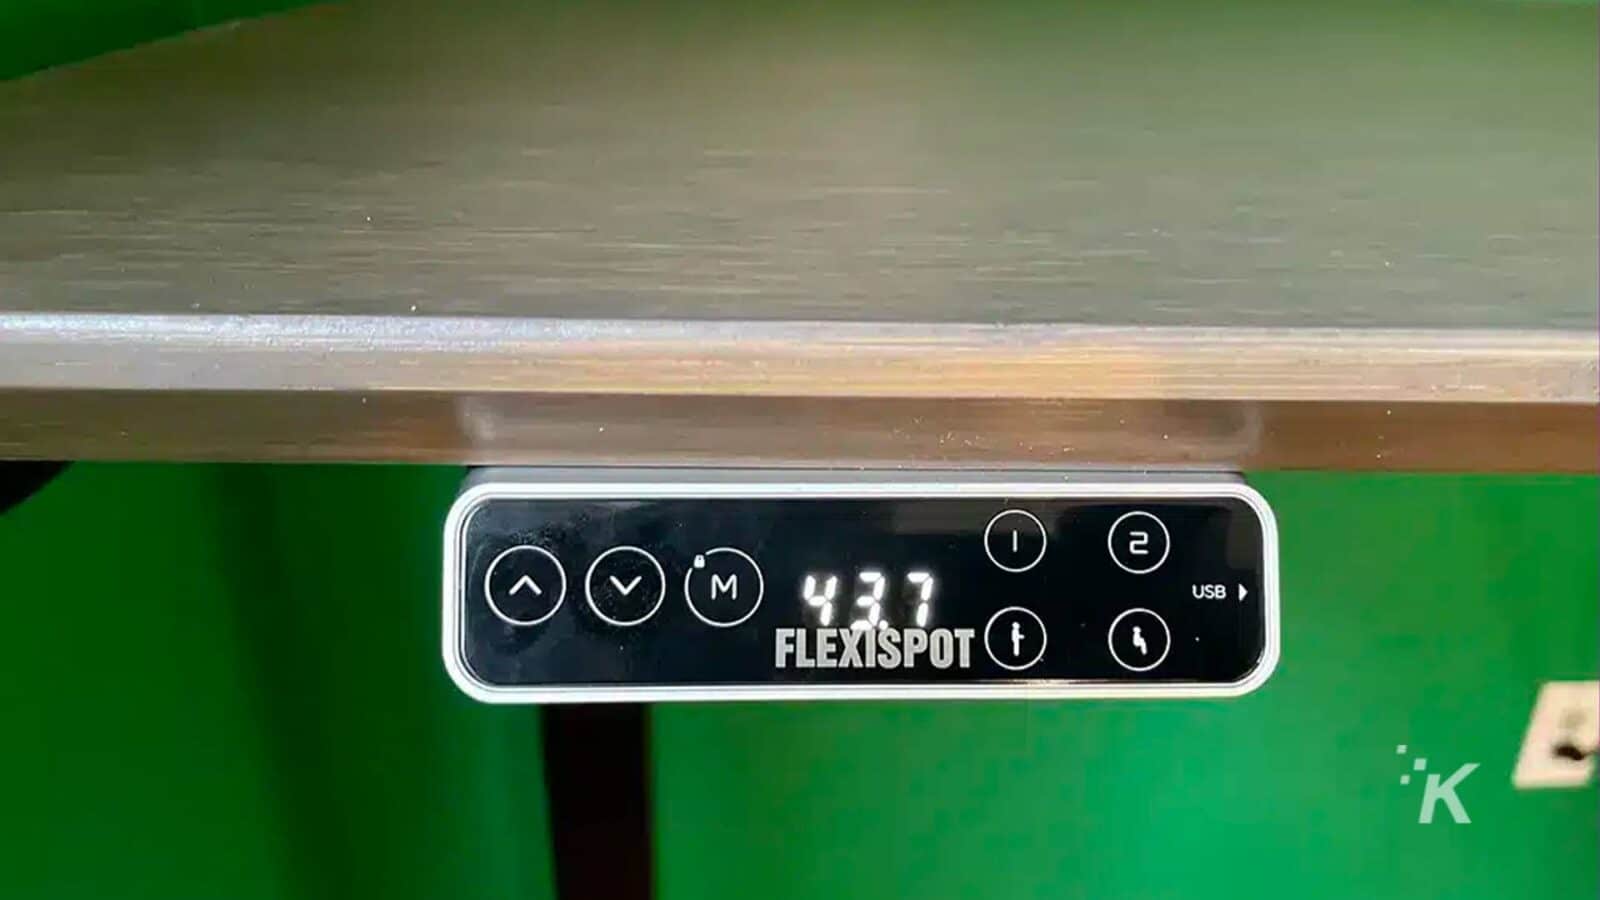 Gambar menunjukkan kabel USB yang terhubung ke perangkat FlexiSpot. Teks Lengkap: - VM) 437 2 1 USB od FLEXISPOT K